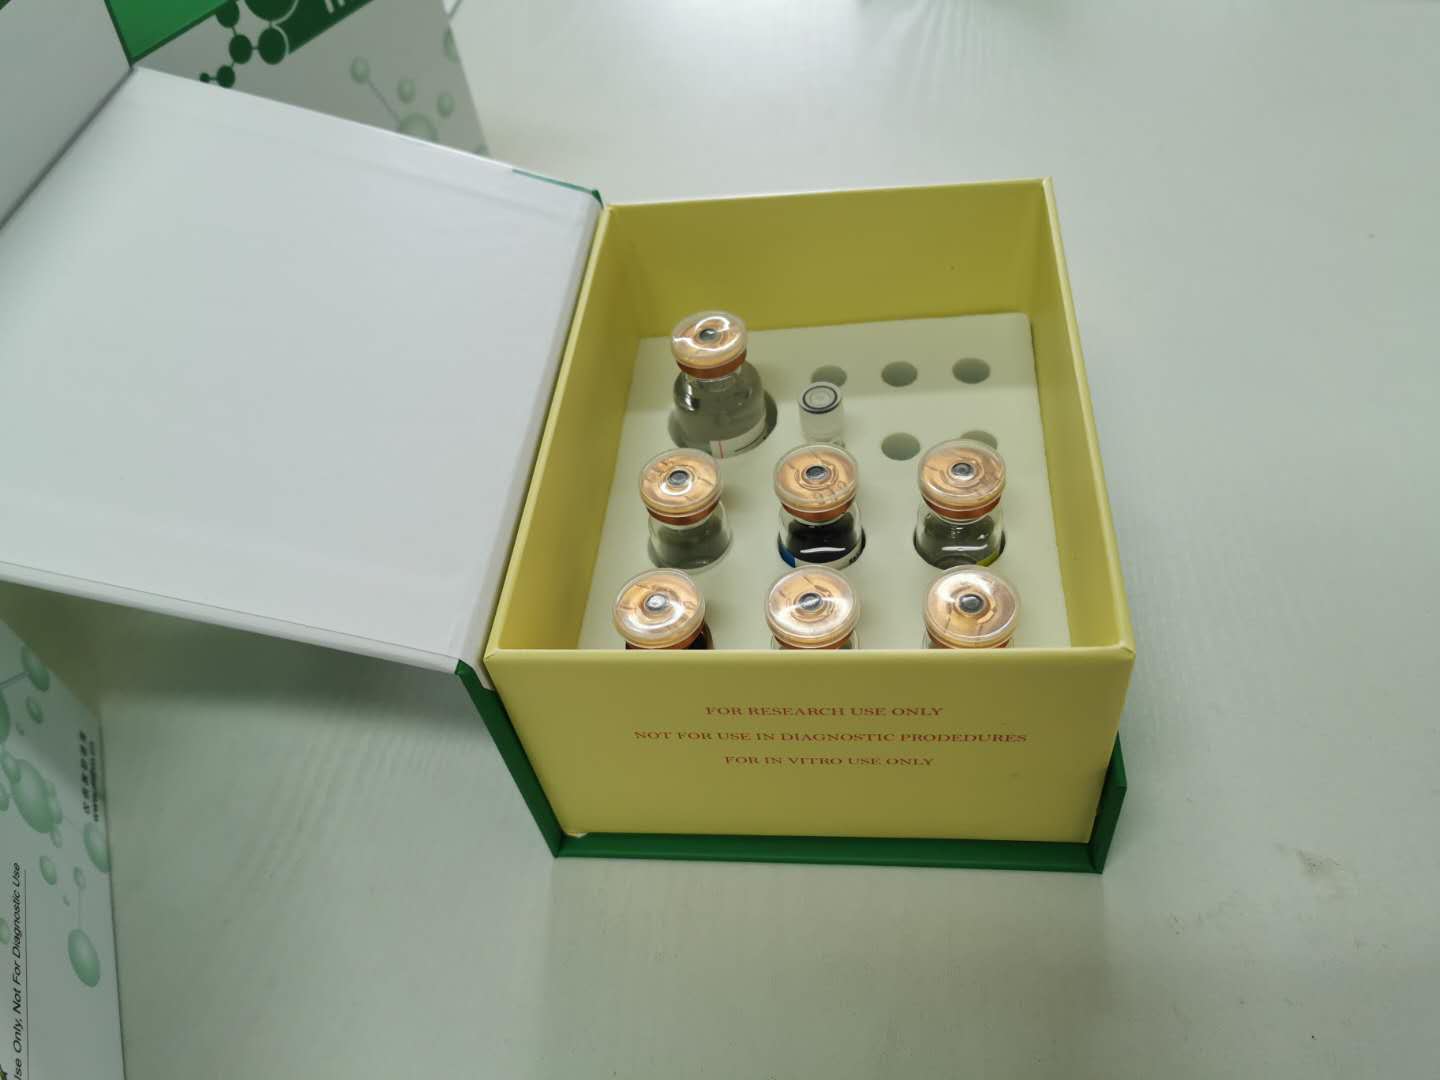 大鼠泛素羧基端酯酶L1酶联免疫试剂盒提供实验数据